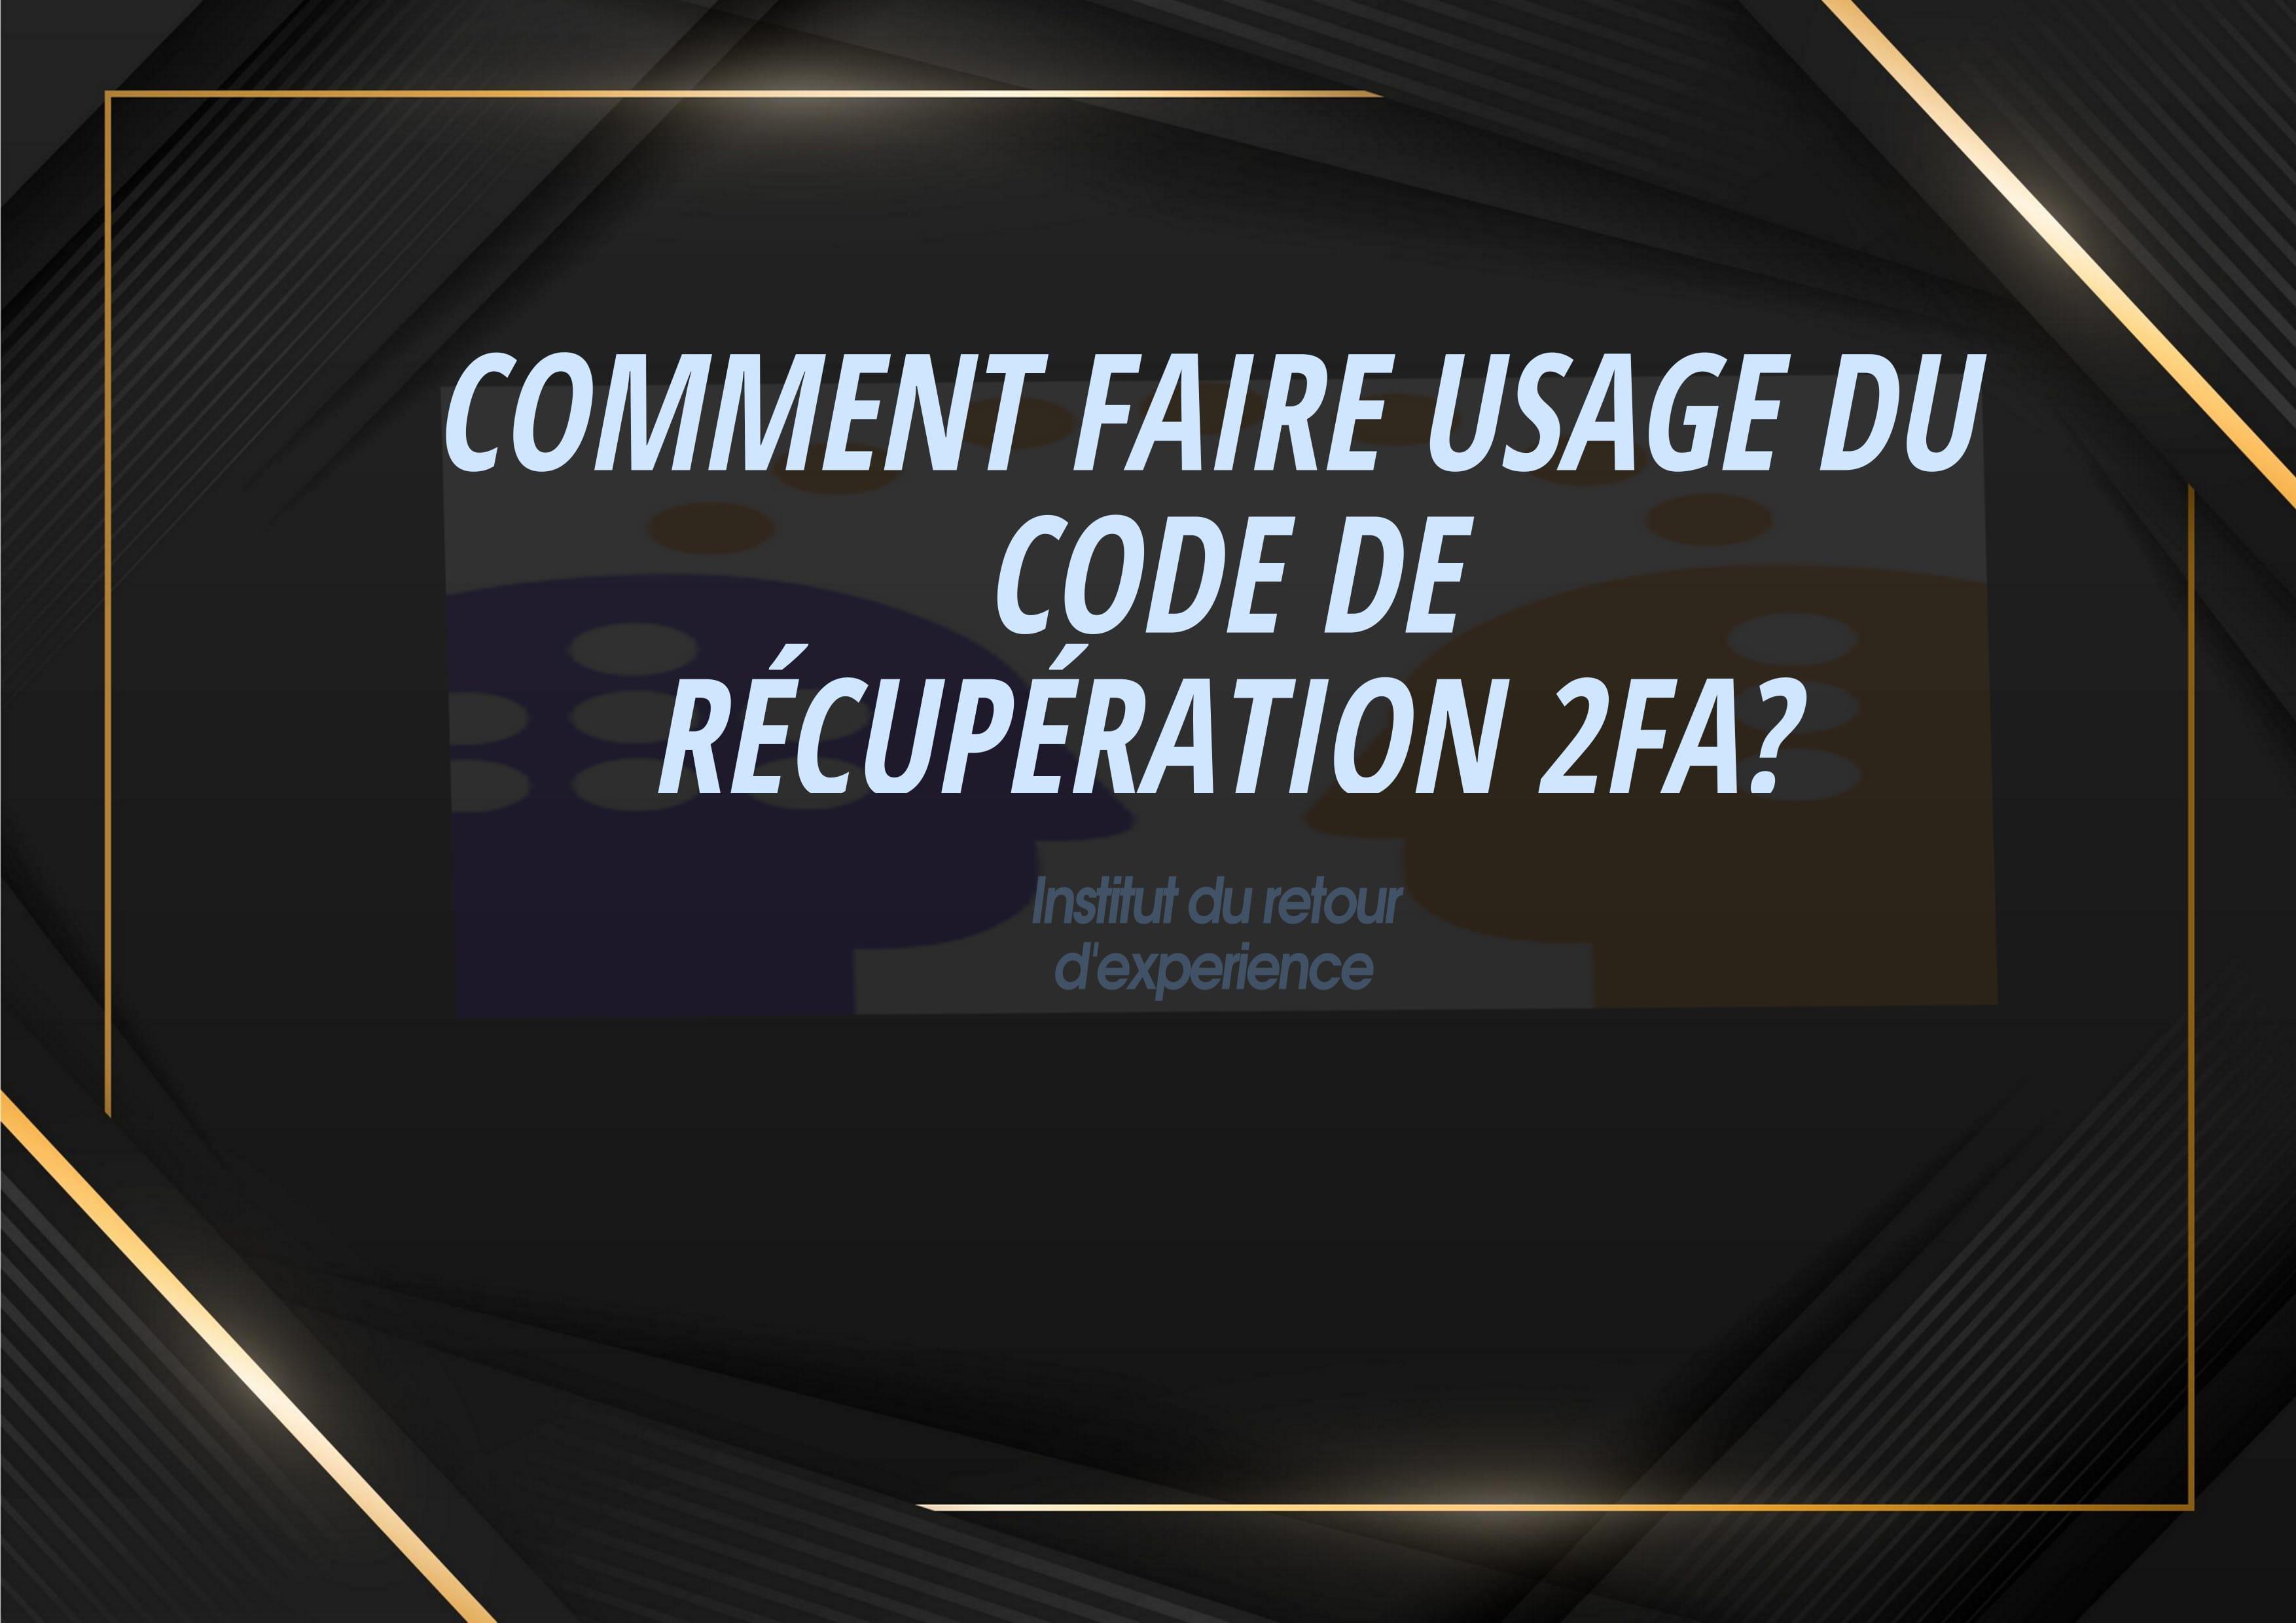 COMMENT FAIRE USAGE DU CODE DE RÉCUPÉRATION 2FA ? - Cover Image